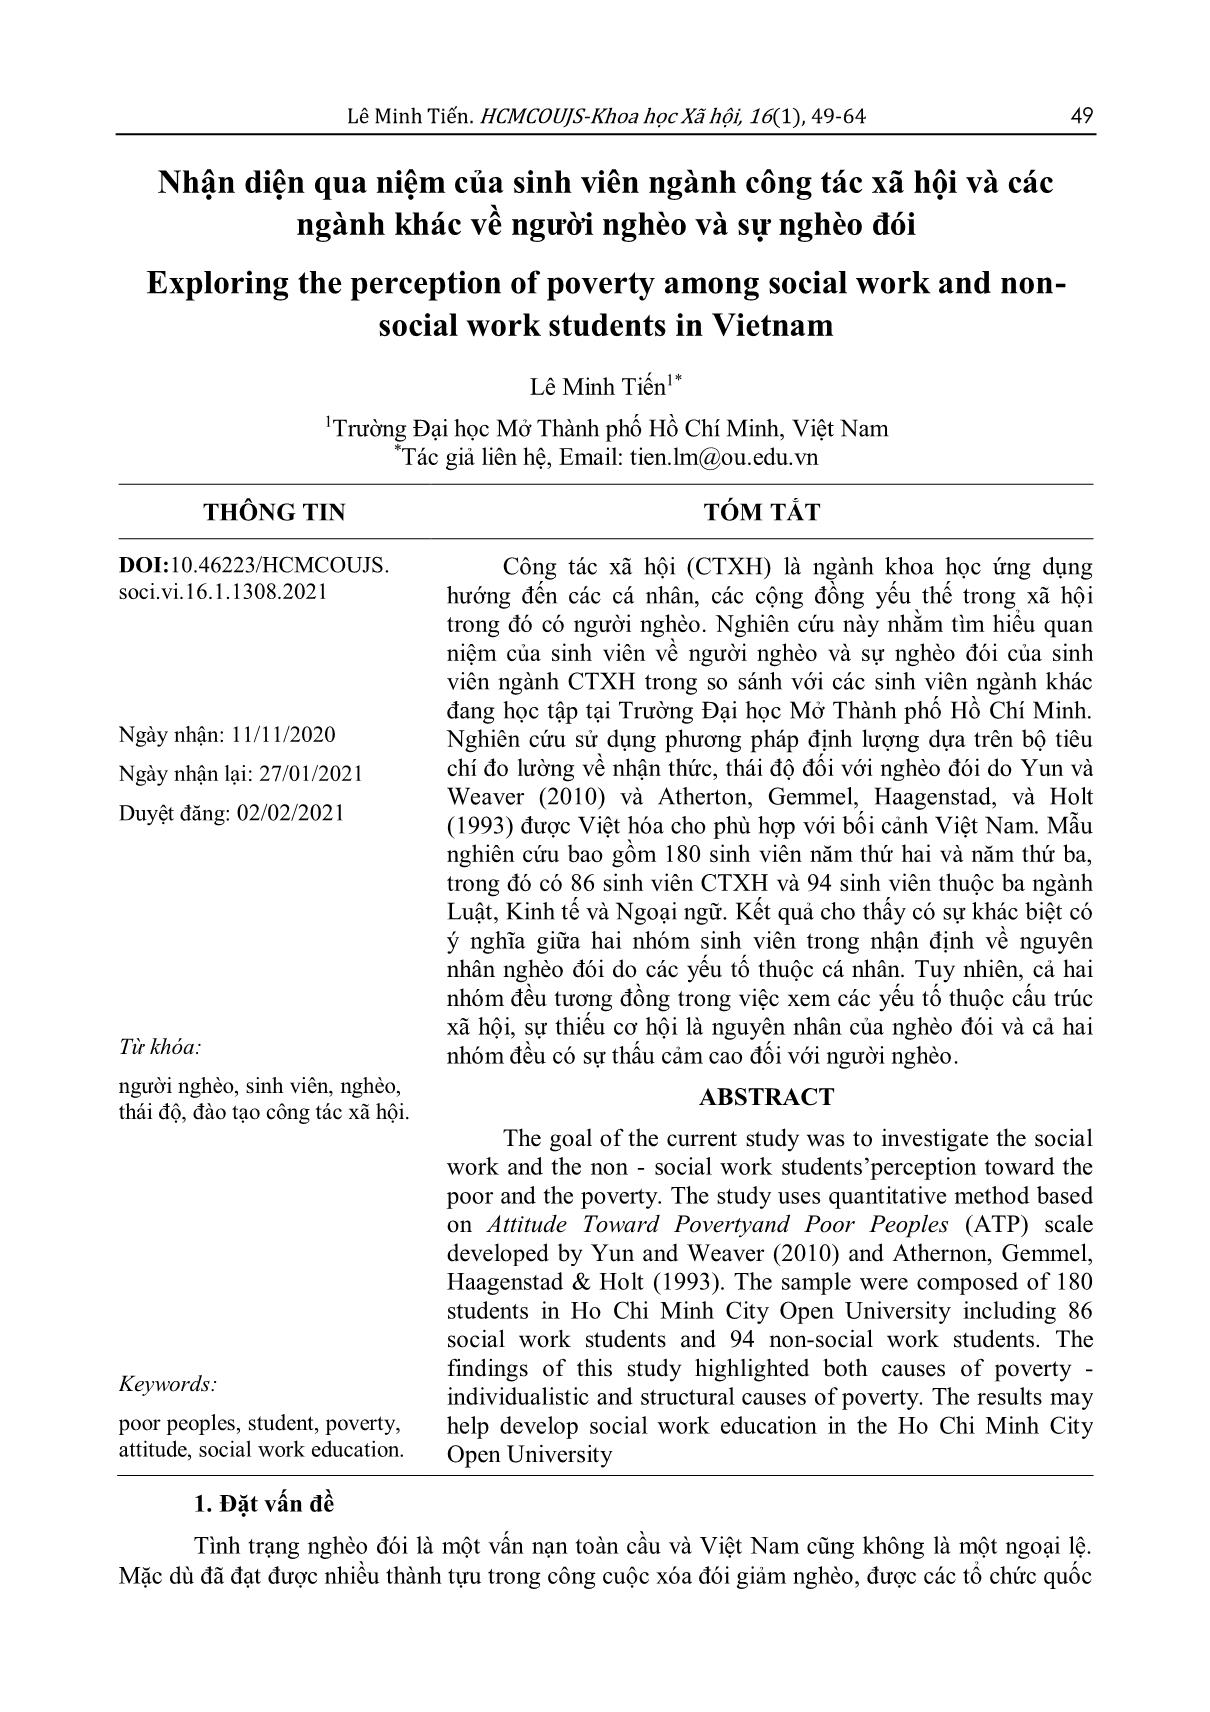 Nhận diện qua niệm của sinh viên ngành công tác xã hội và các ngành khác về người nghèo và sự nghèo đói trang 1